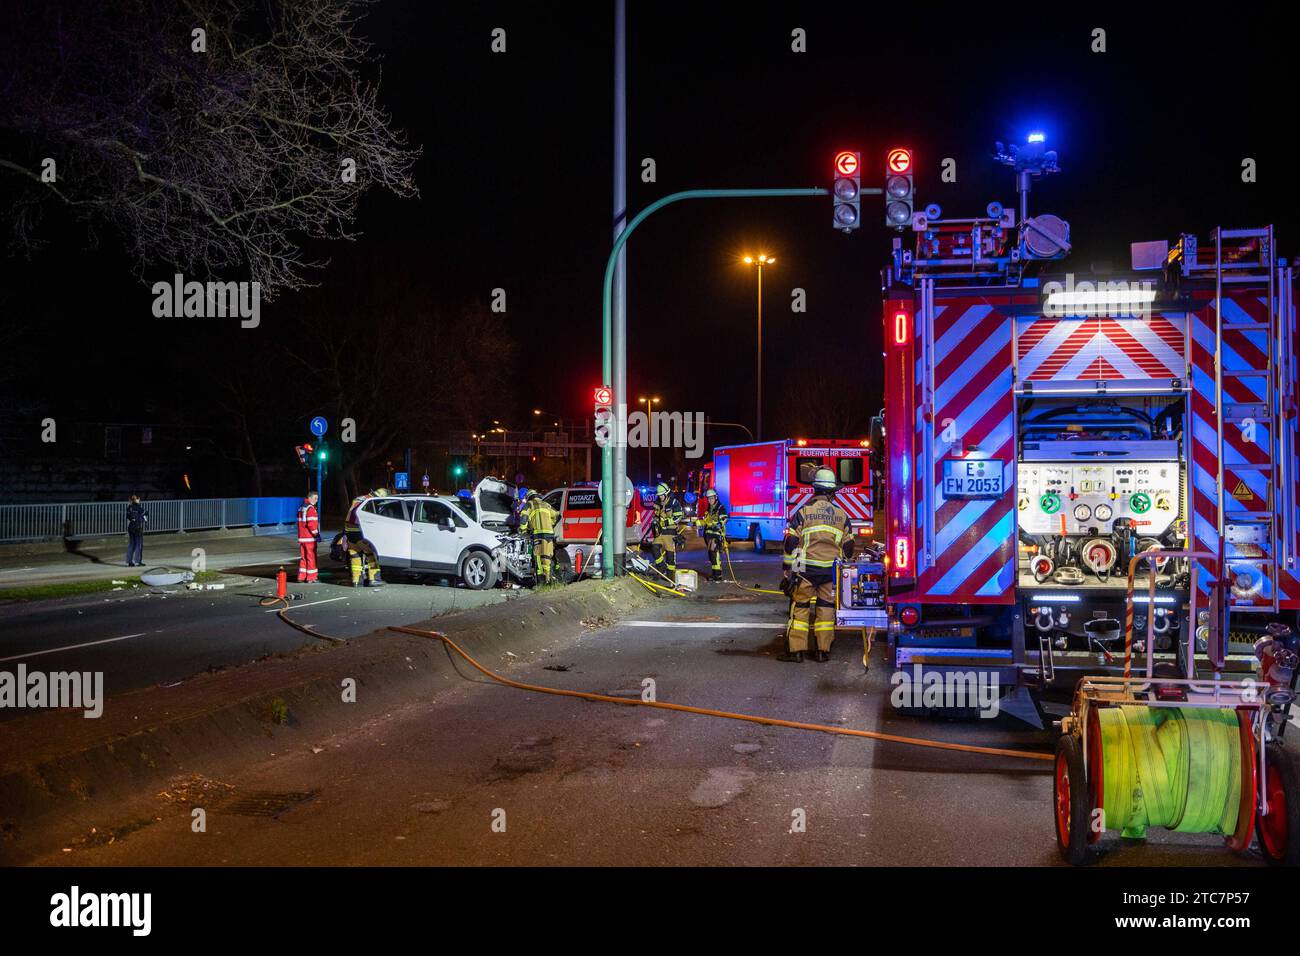 Feuerwehr und Rettungsdienst bei einem Verkehrsunfall in Essen im Einsatz *** Fire and rescue services deployed in a traffic accident in Essen Credit: Imago/Alamy Live News Stock Photo